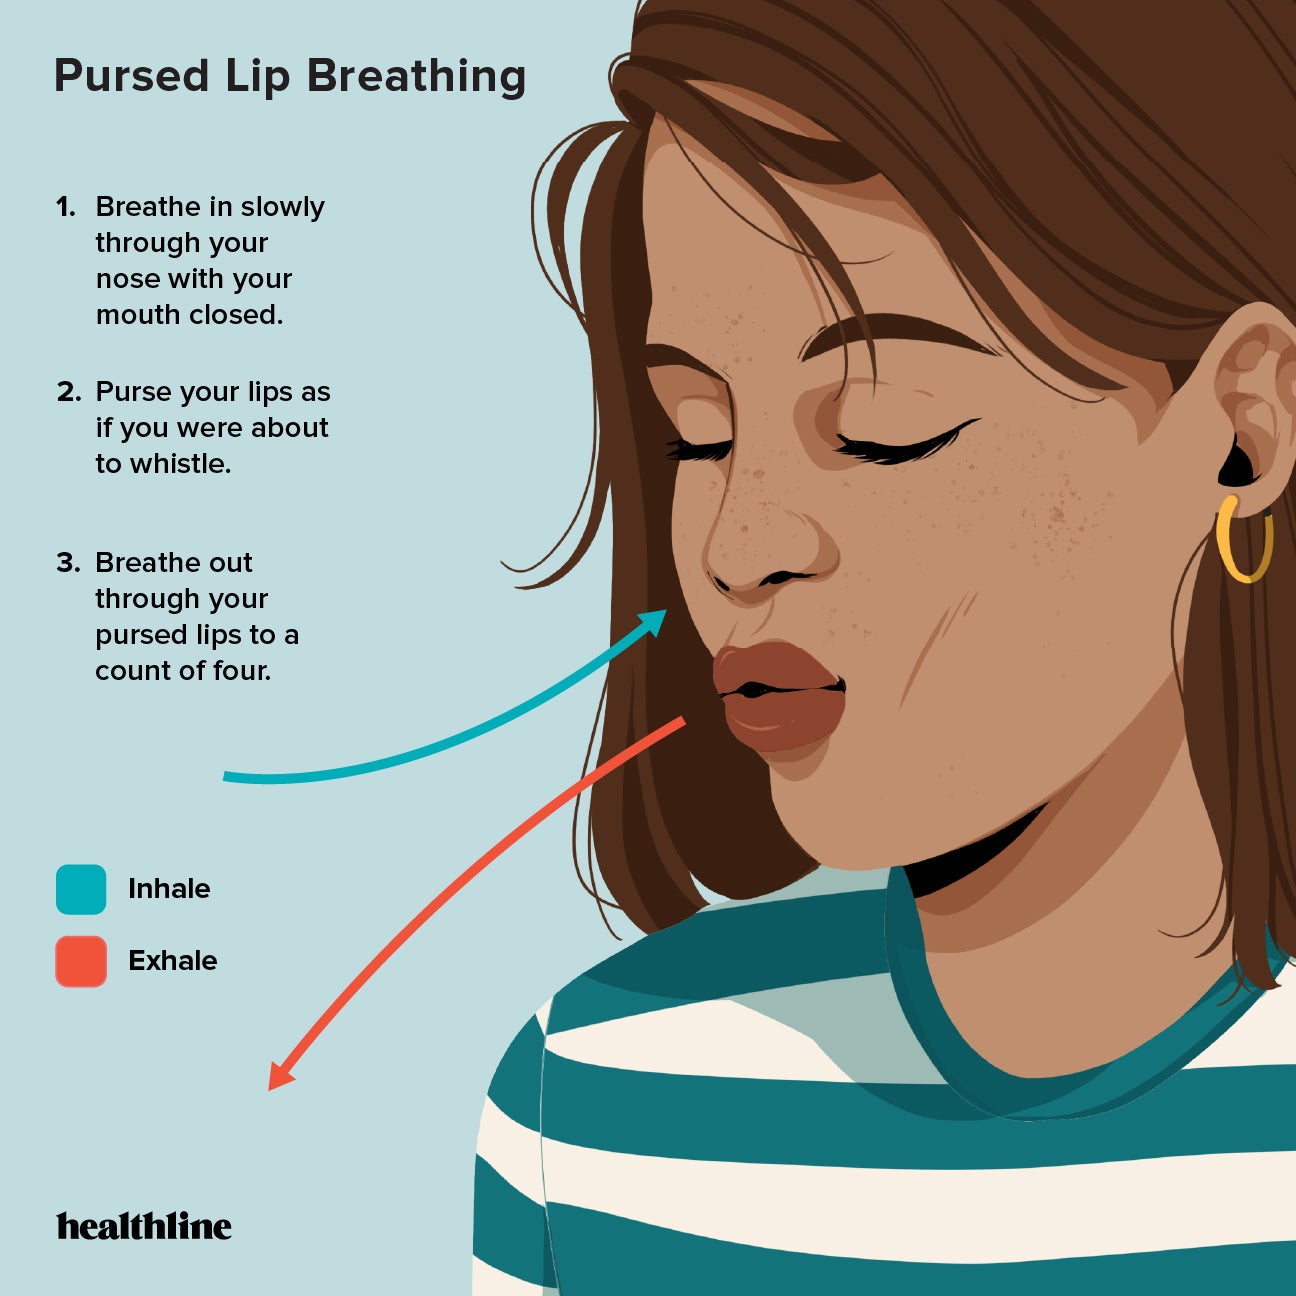 https://post.healthline.com/wp-content/uploads/2022/09/HL-2428827-6_Breathing_Exercises_for_Severe_Asthma-1296x1296-Infographic-Pursed_Lip_Breathing.jpg